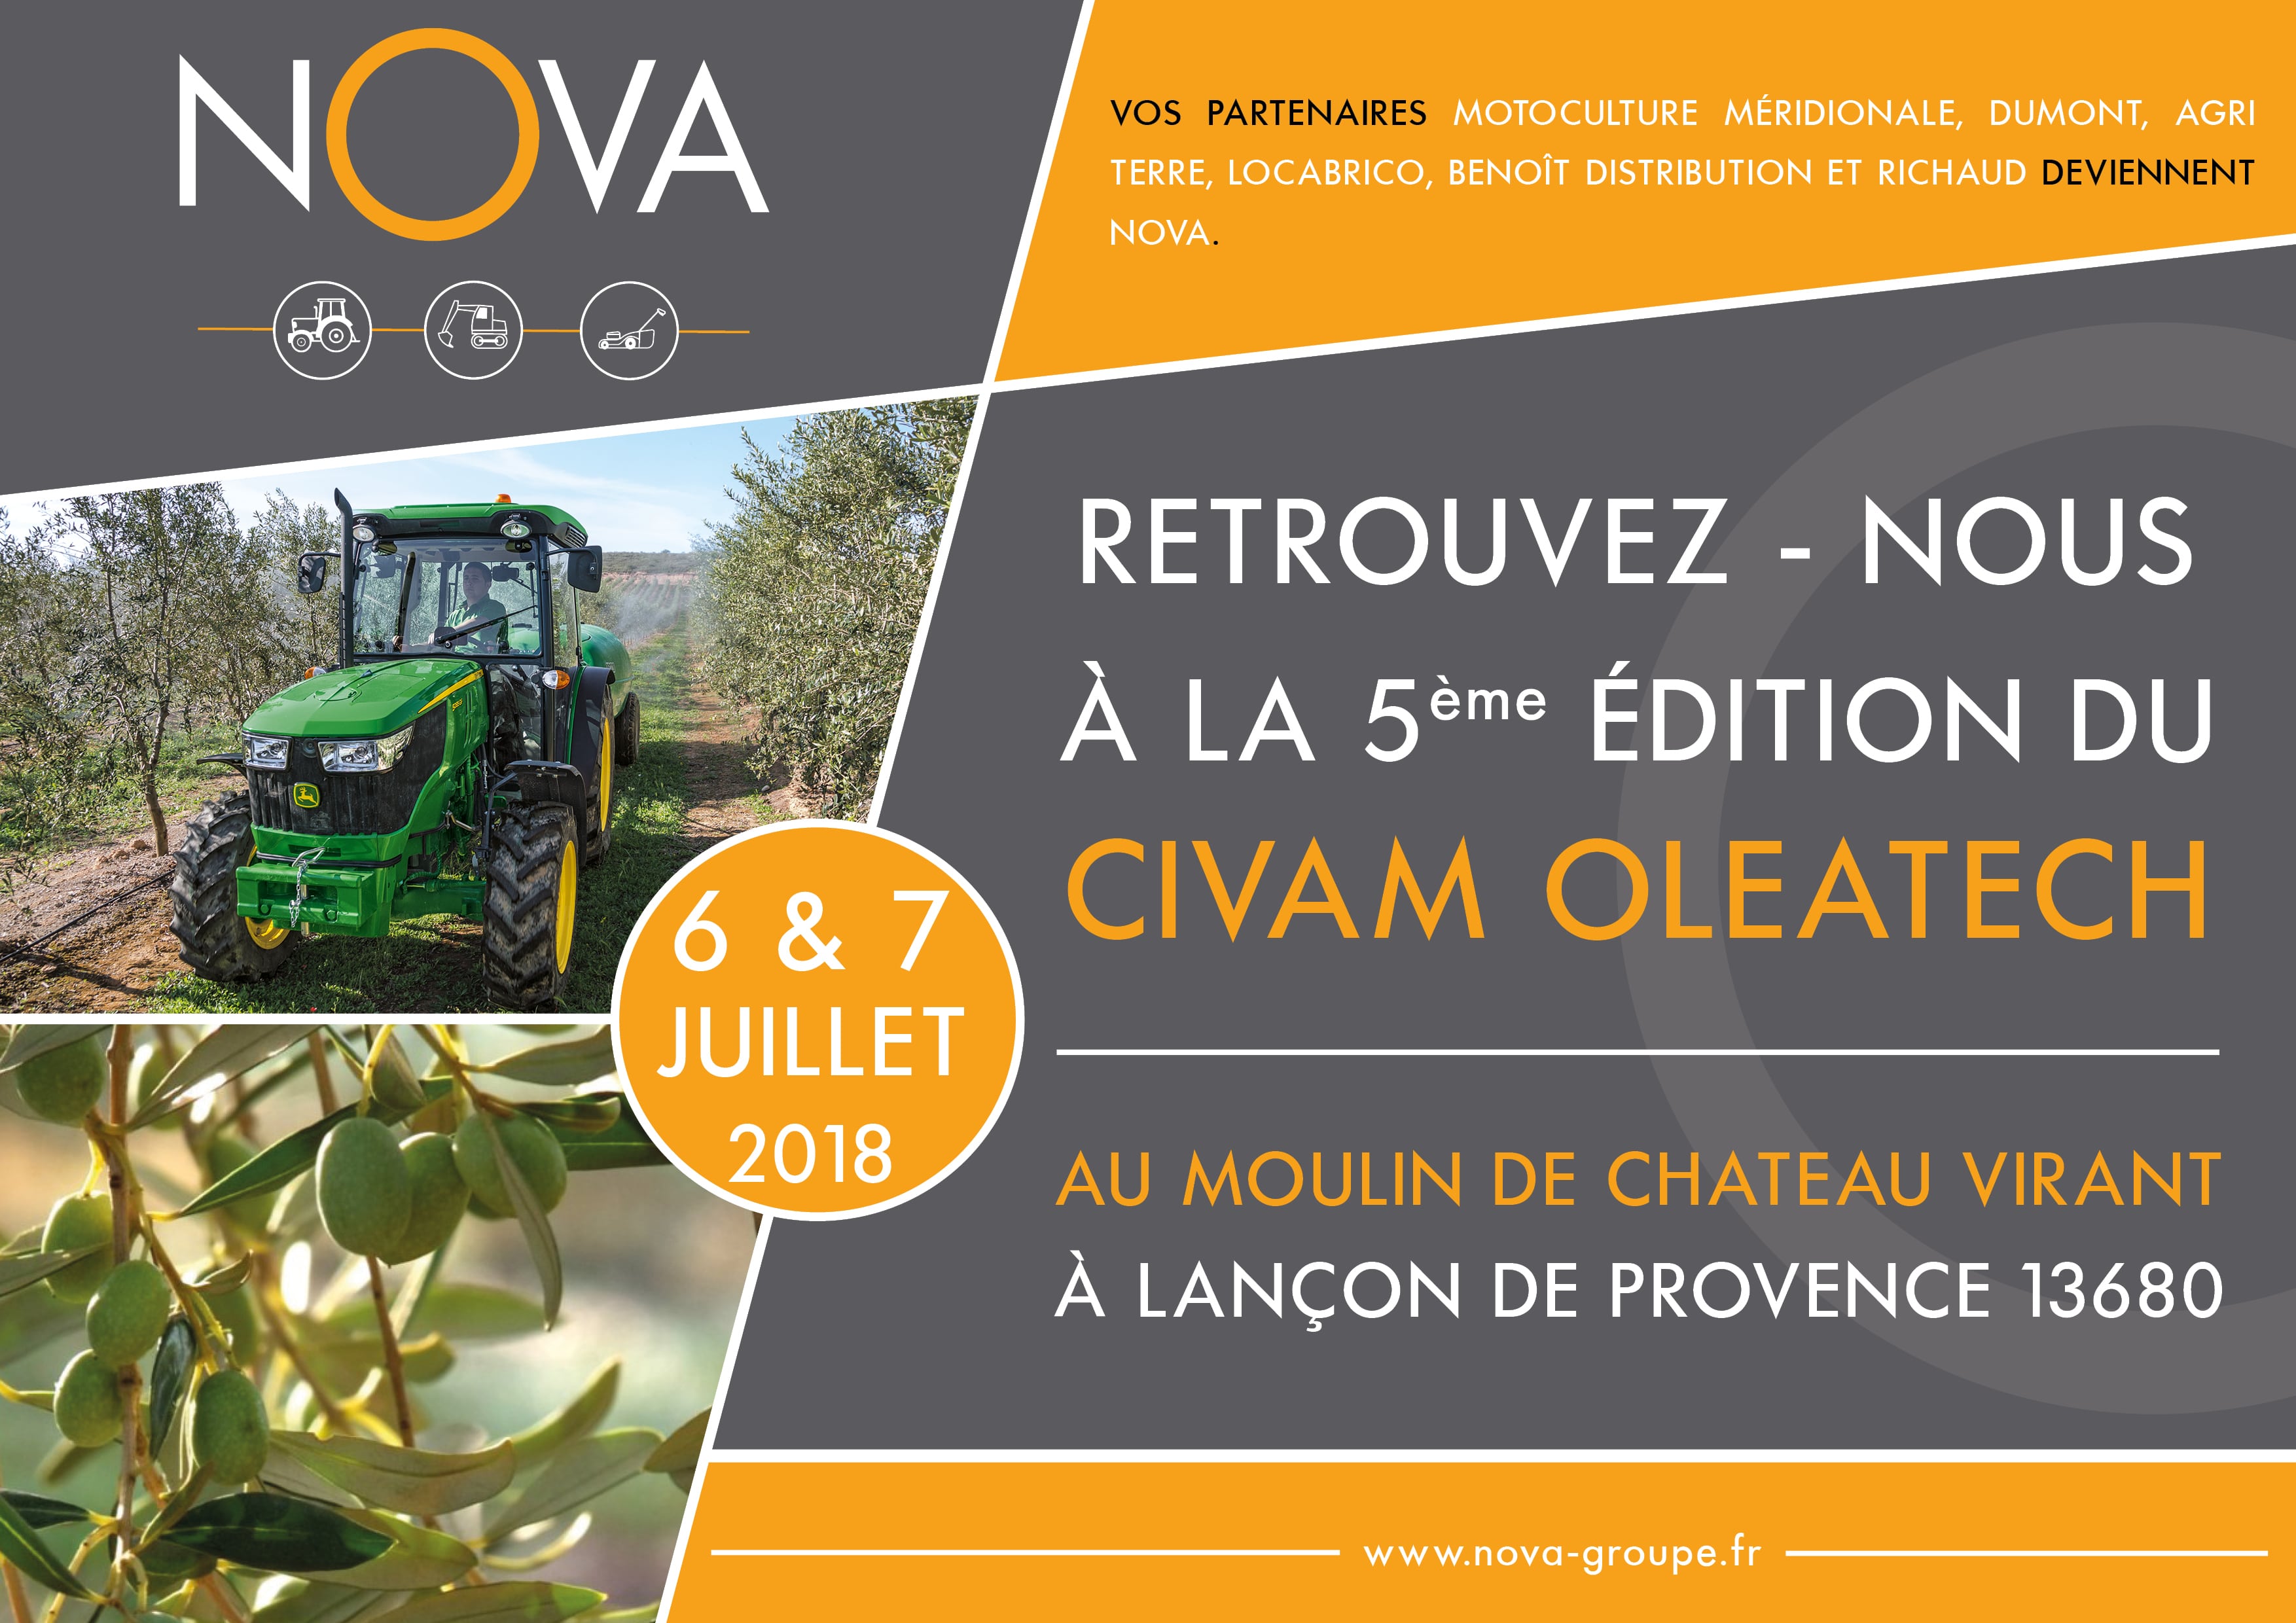 Nova participera à la 5ème édition du CIVAM OLEATECH le vendredi 6 et samedi 7 juillet au moulin de Château Virant à Lançon de Provence.